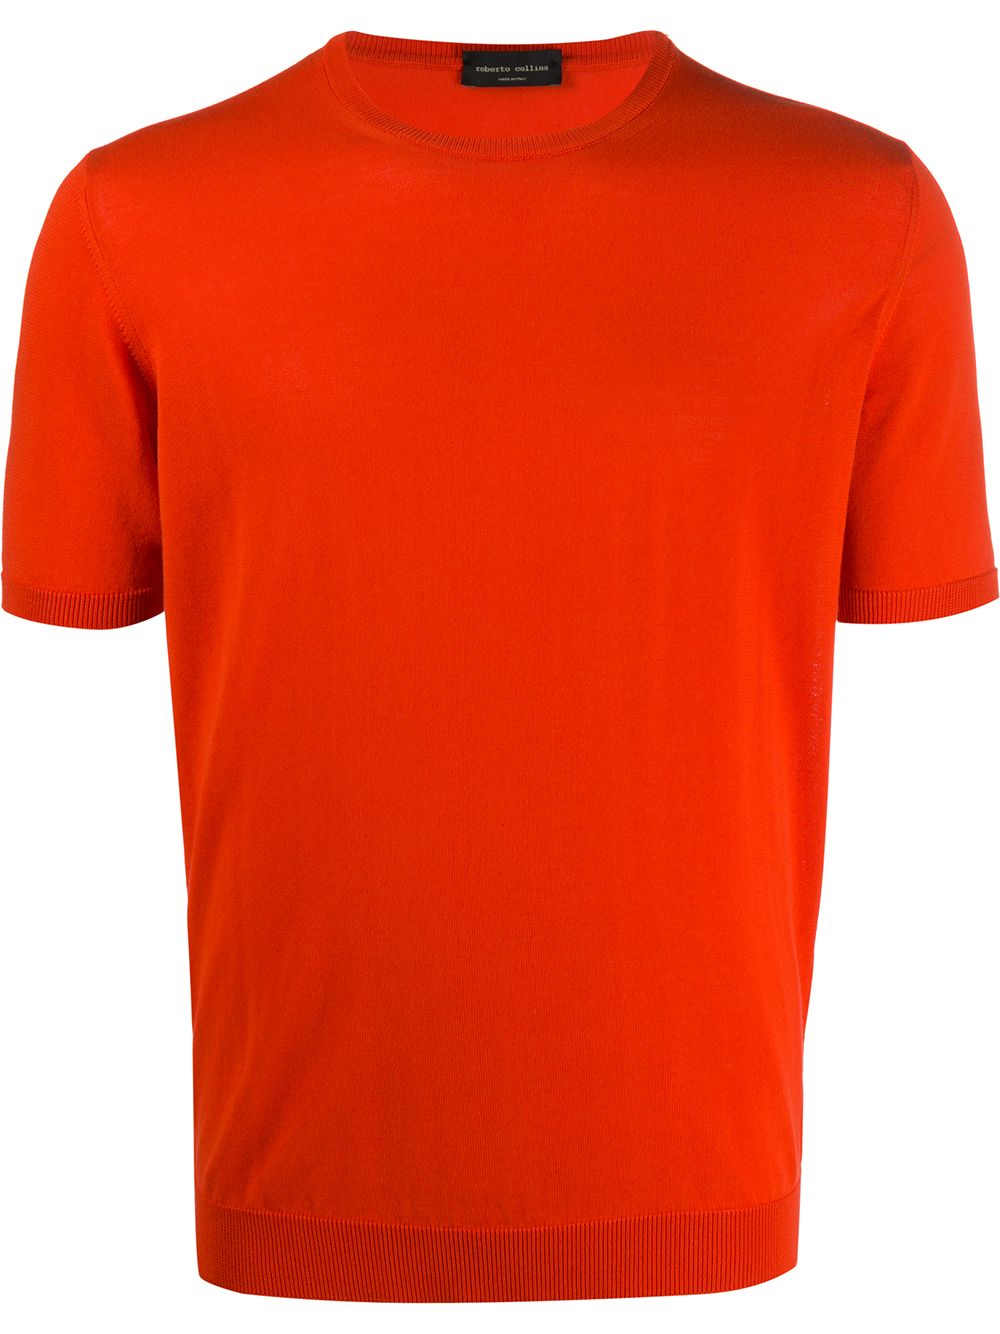 オレンジtシャツ コーデ特集 ビタミンカラーで明るい印象に仕上げたメンズの着こなし紹介 メンズファッションメディア Otokomaeotokomae 男前研究所